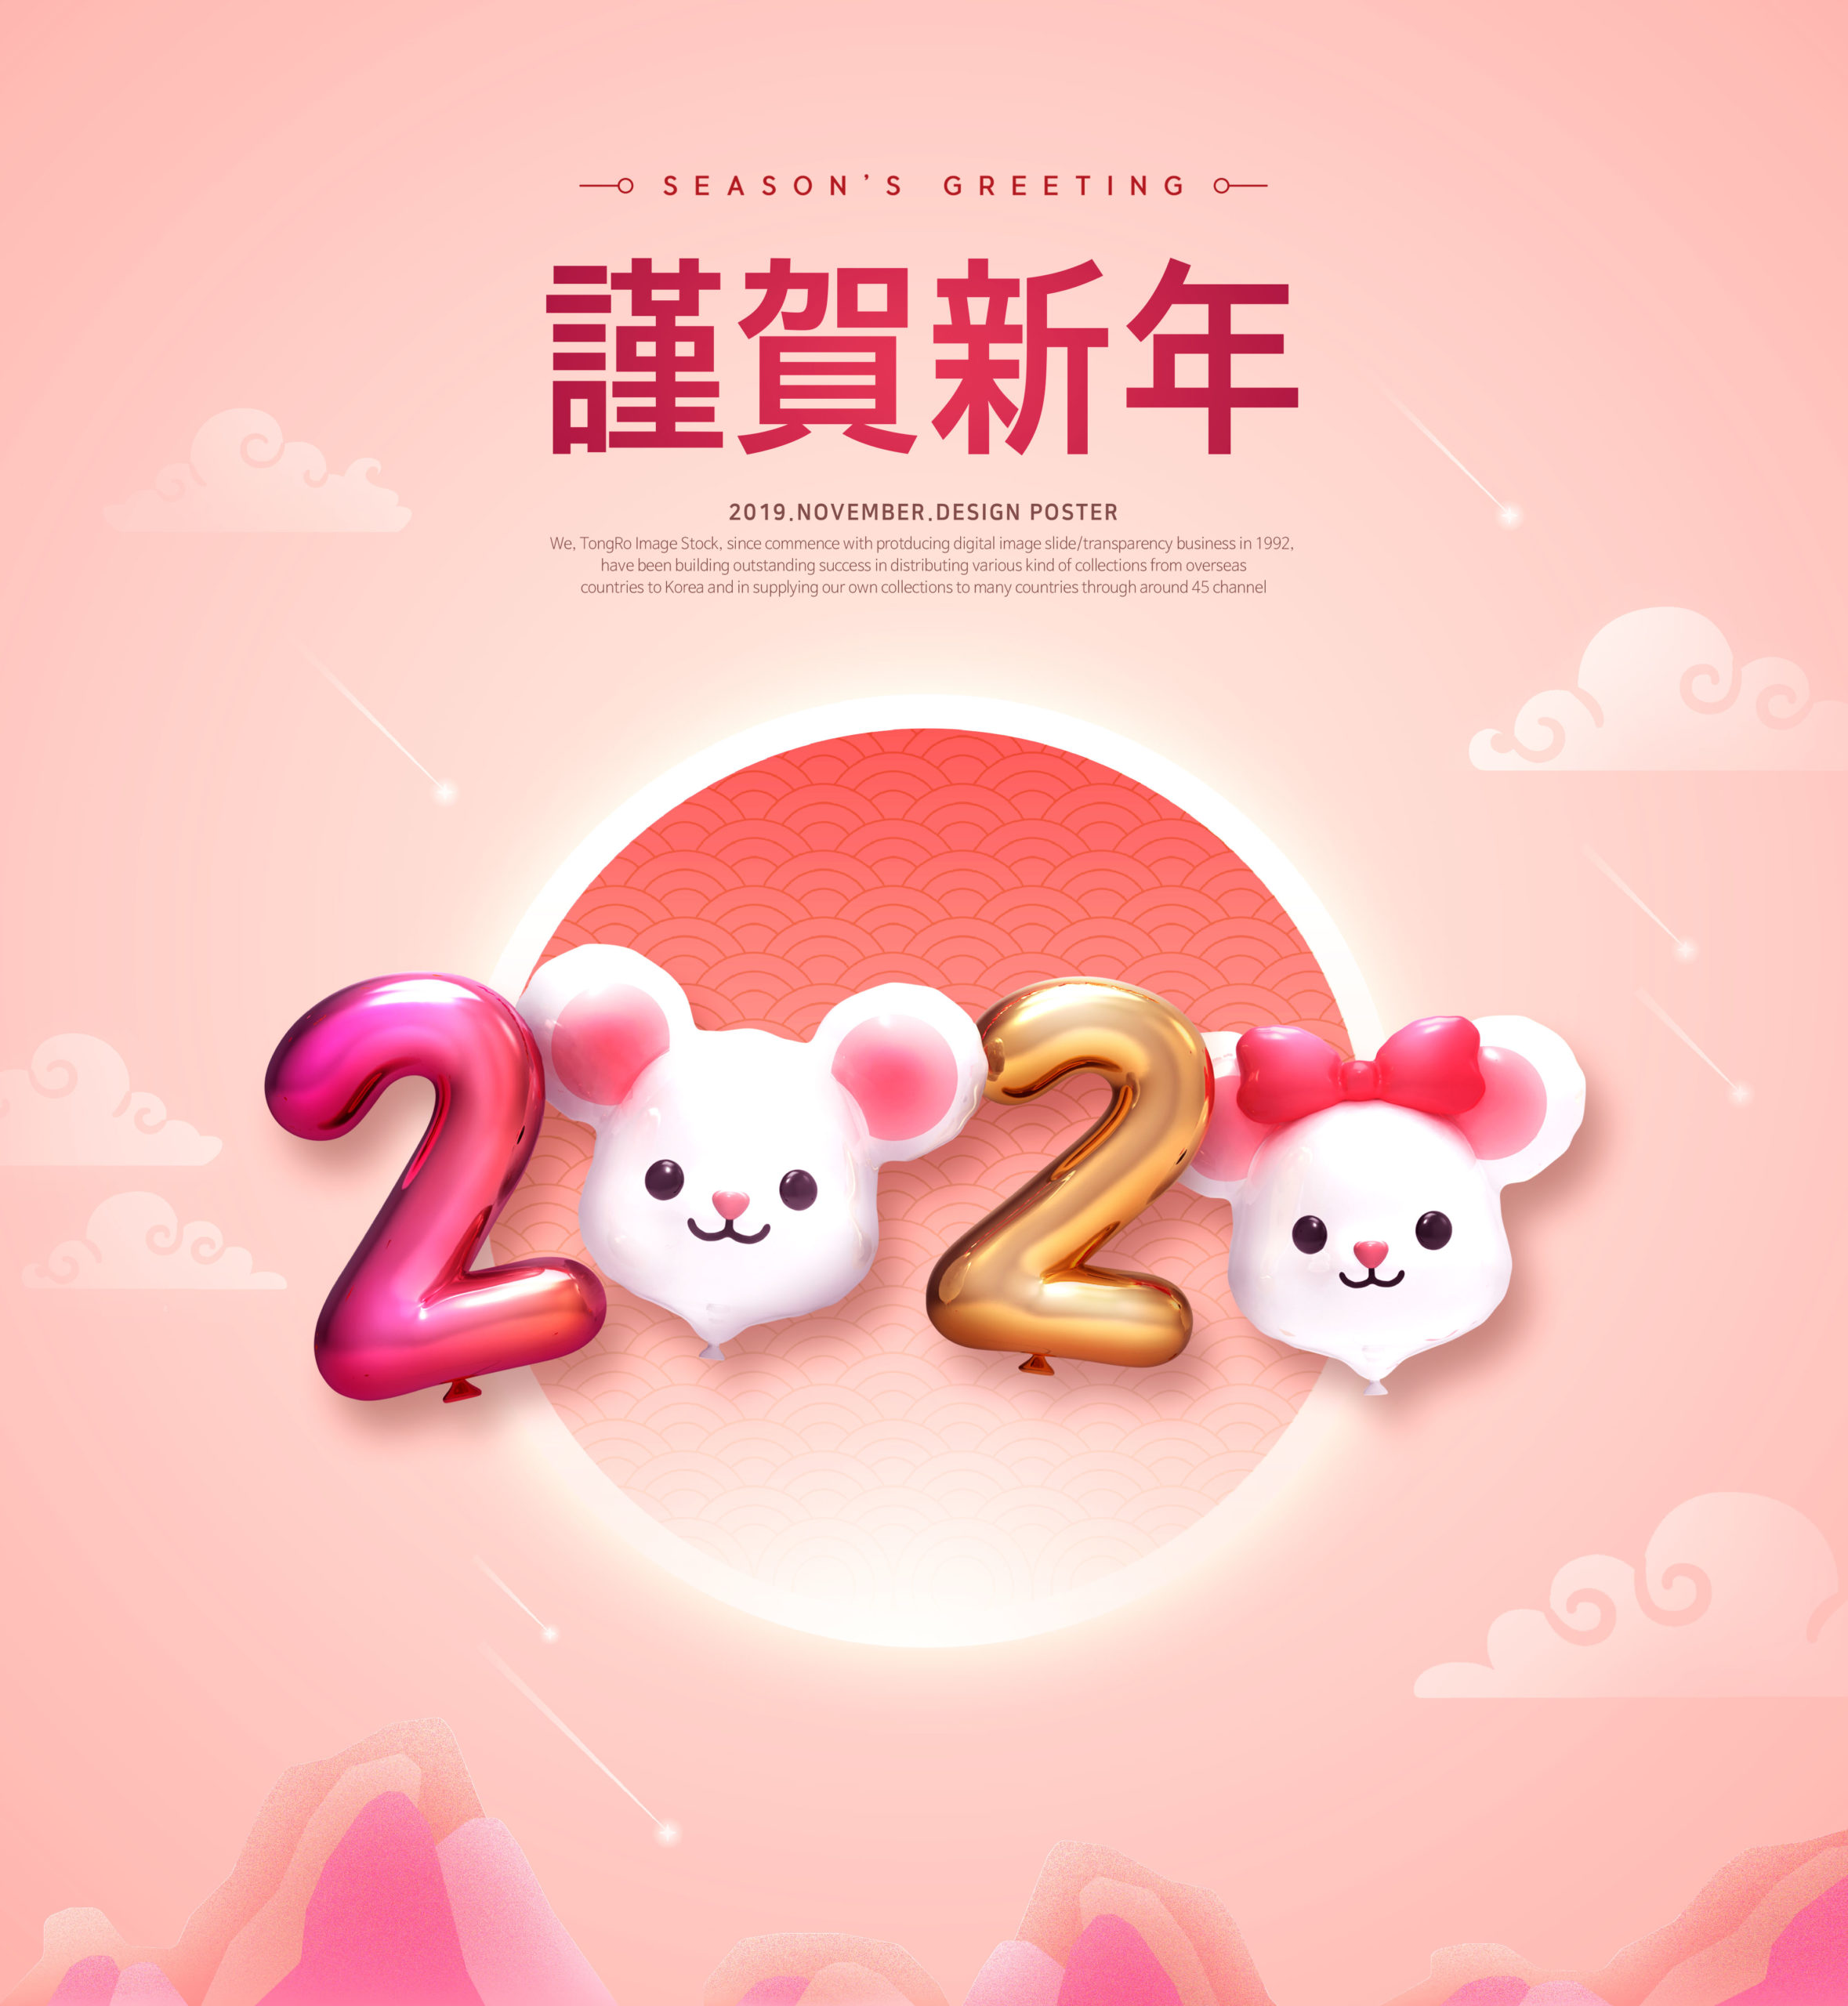 可爱小老鼠2020鼠年/庚子年/新年快乐主题海报模板[PSD]插图(2)